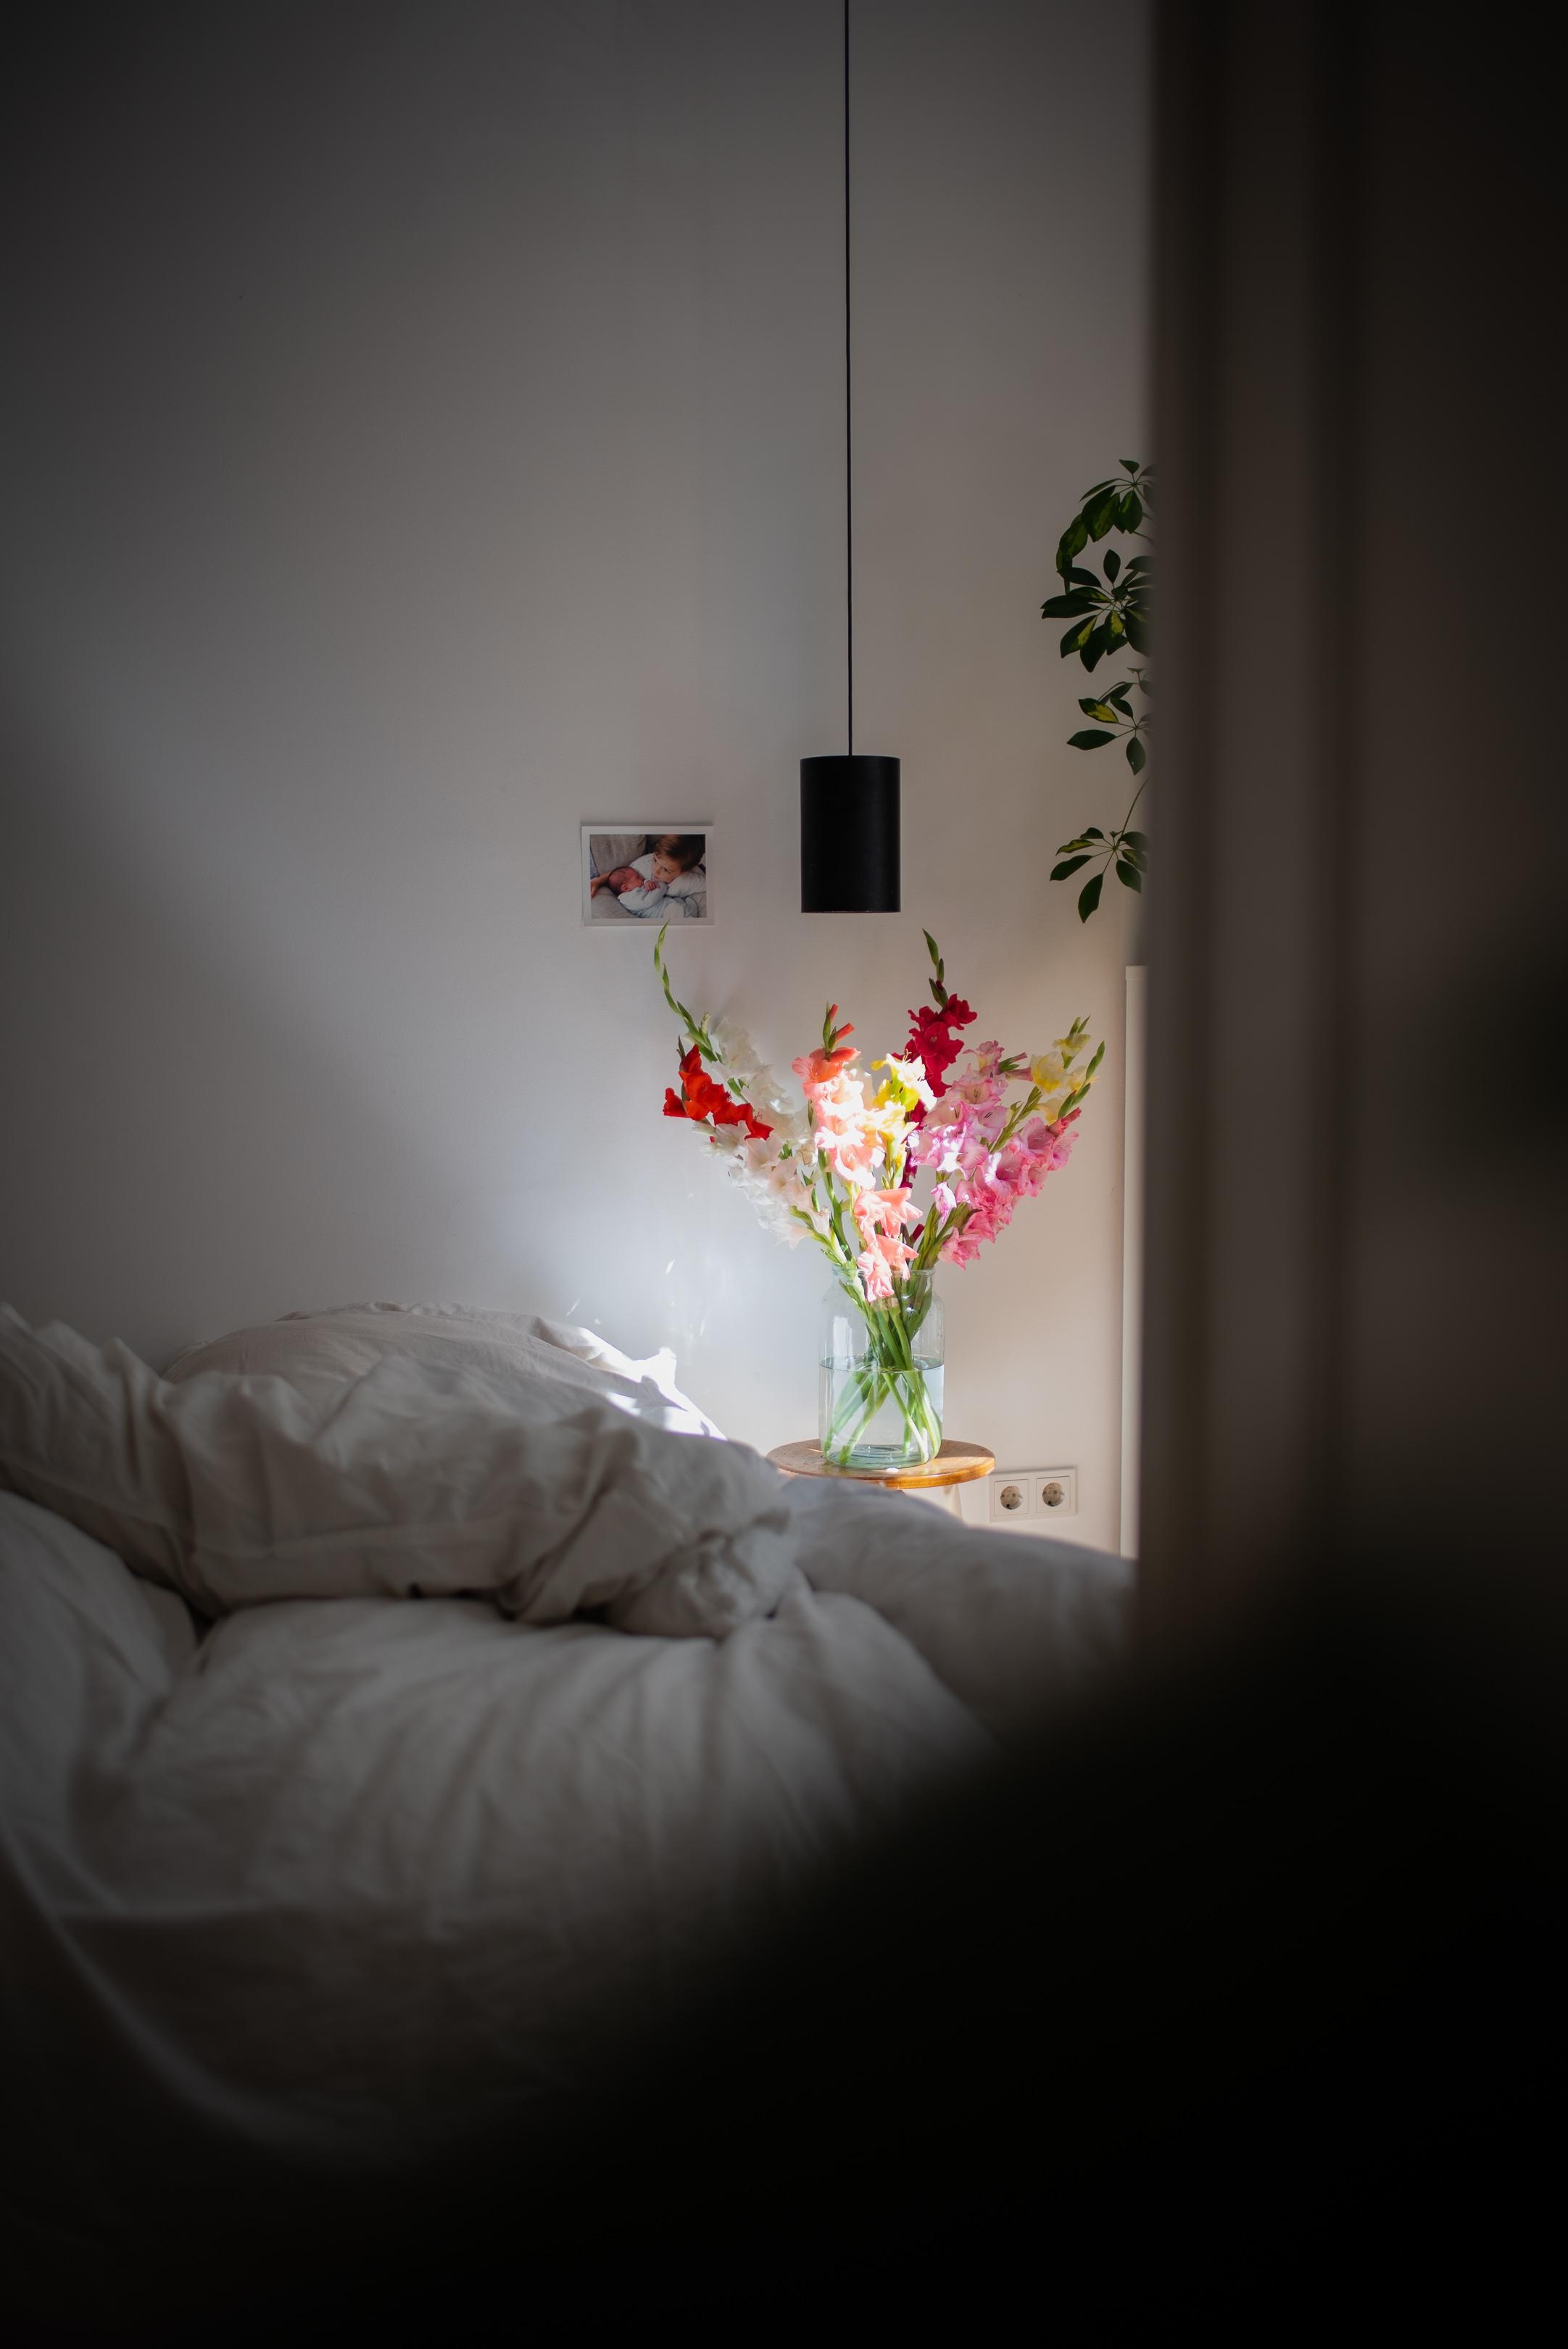 Bunter Morgengruß #freshflowers #bedroom #gladiolen #morgensonne #stilllife